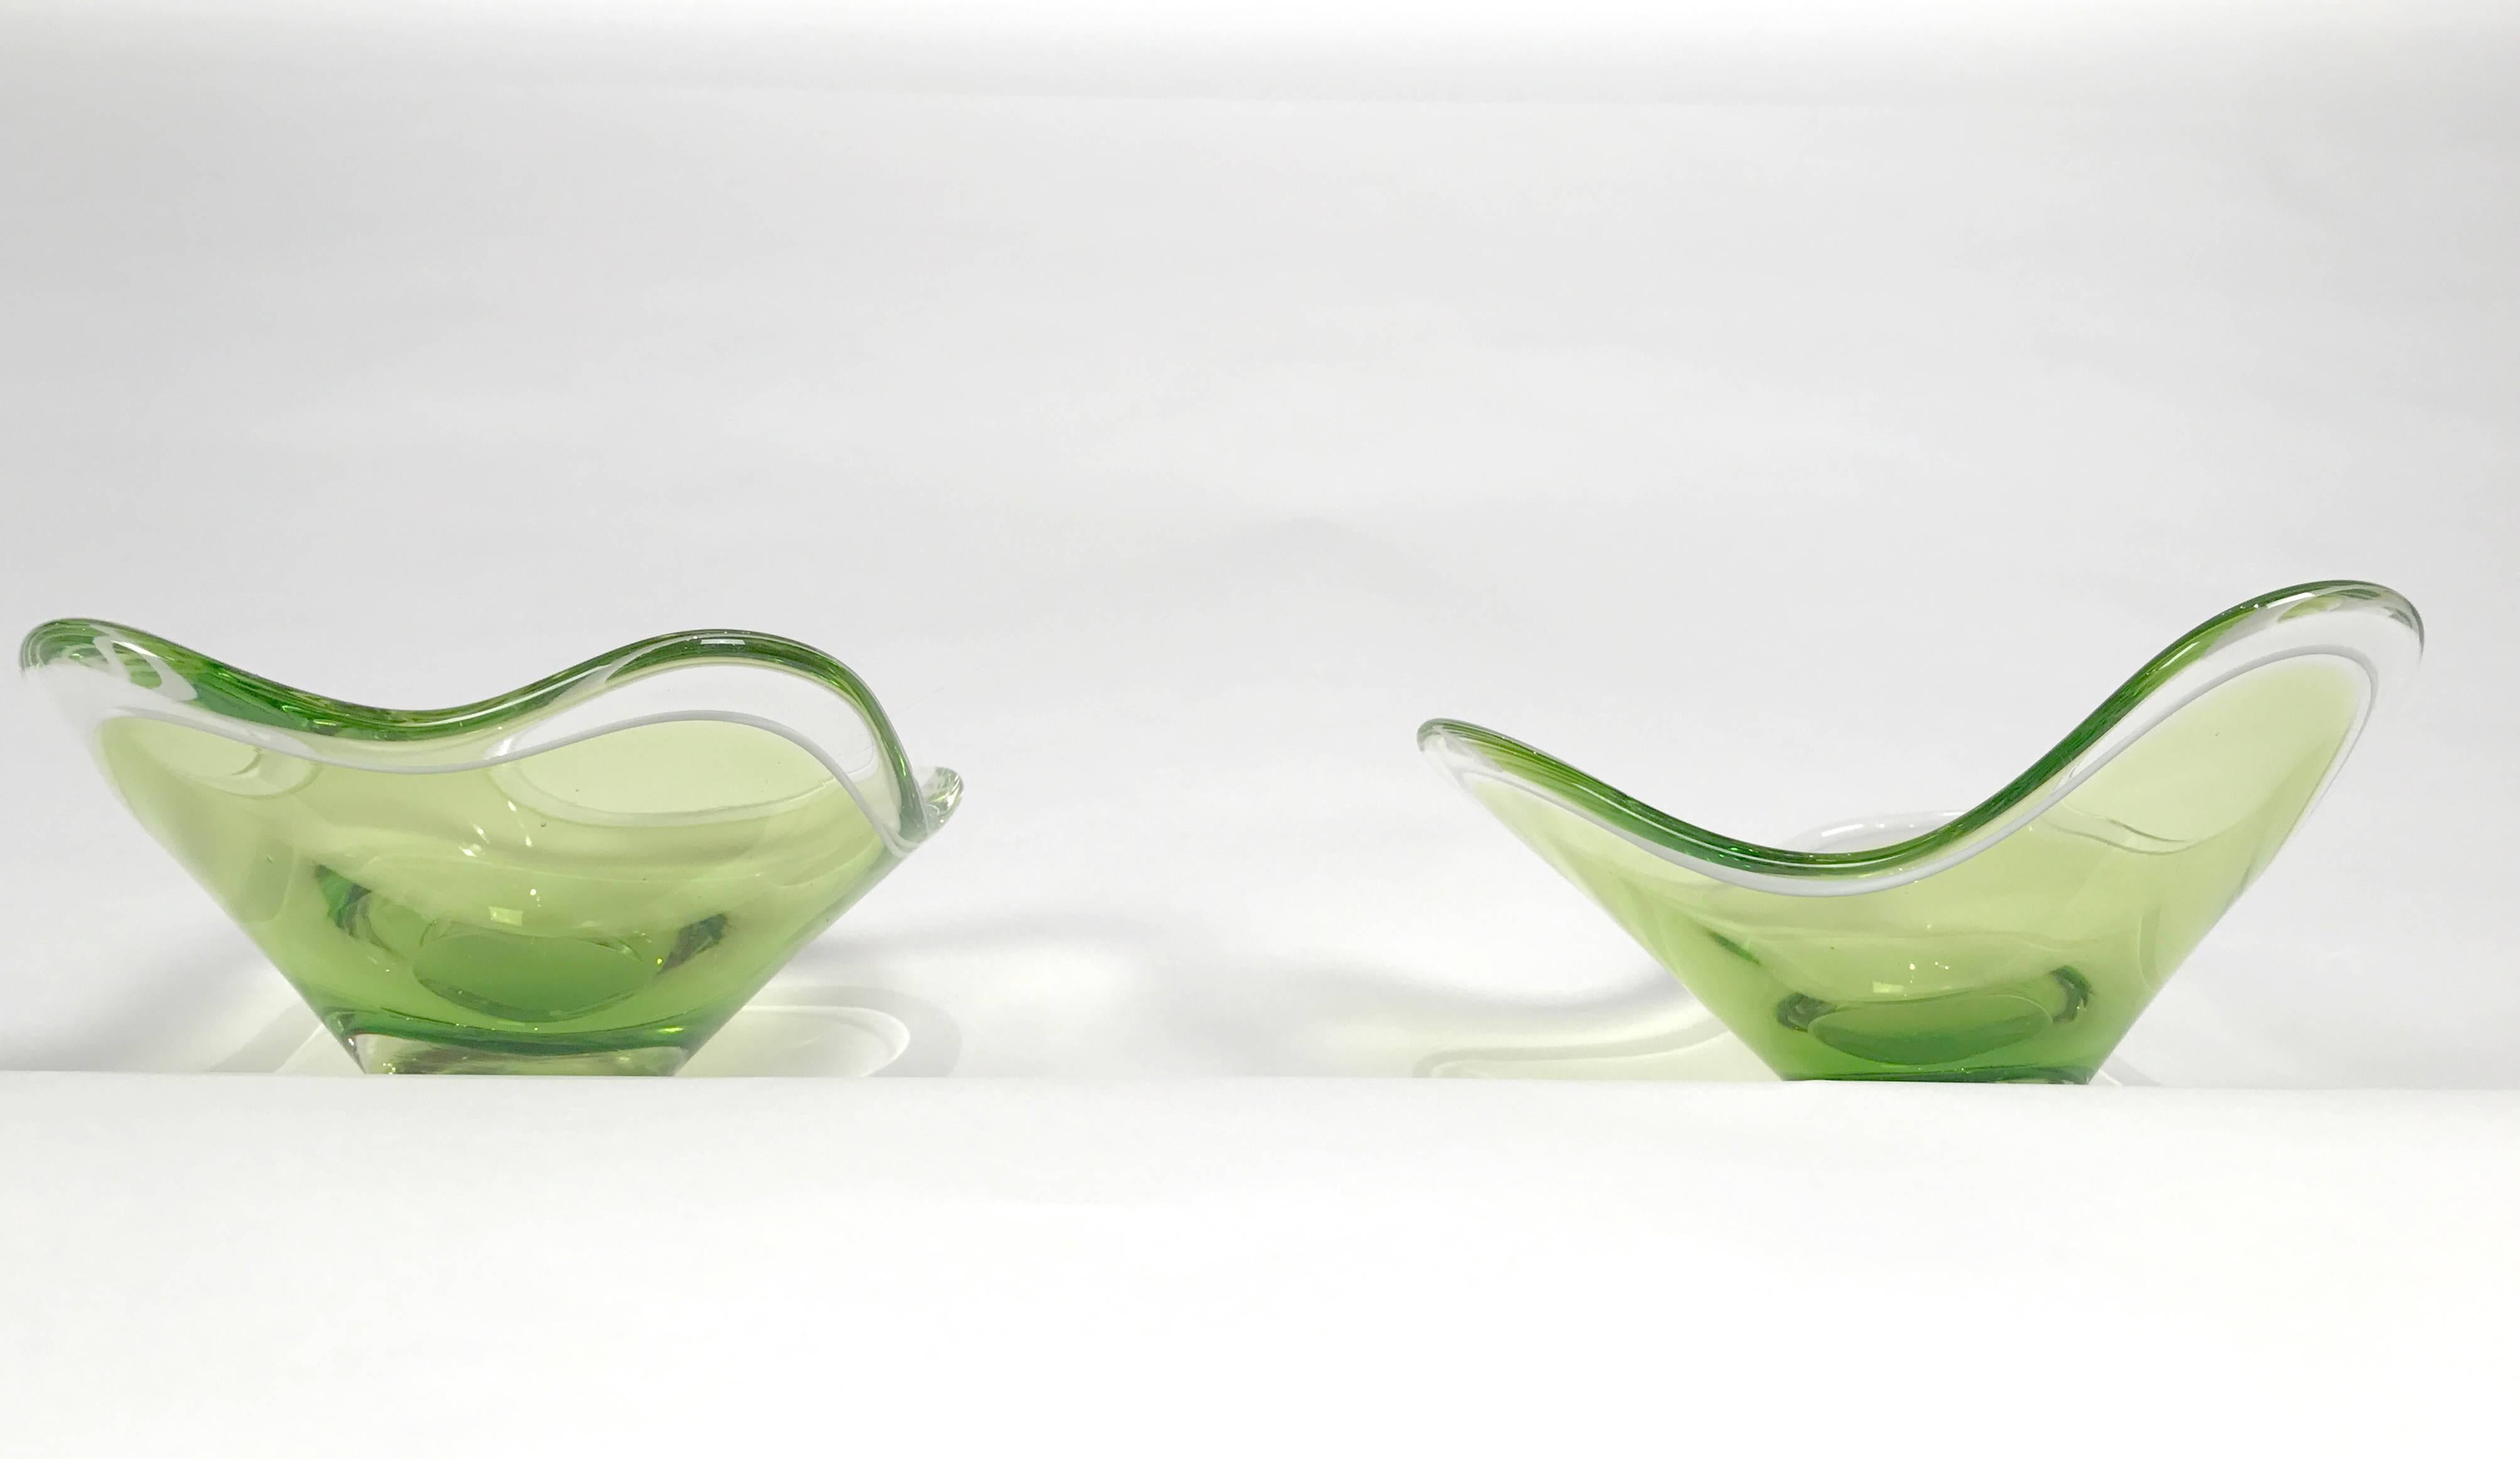 Deux magnifiques bols en verre assortis, un à trois lobes et un à quatre lobes, conçus par Paul Kedelv pour Flygsfors. Les deux pièces sont en excellent état et signées Flygsfors, Kedelv, vers 1955.

 Paul Kedelv 1917-1990, a travaillé pour